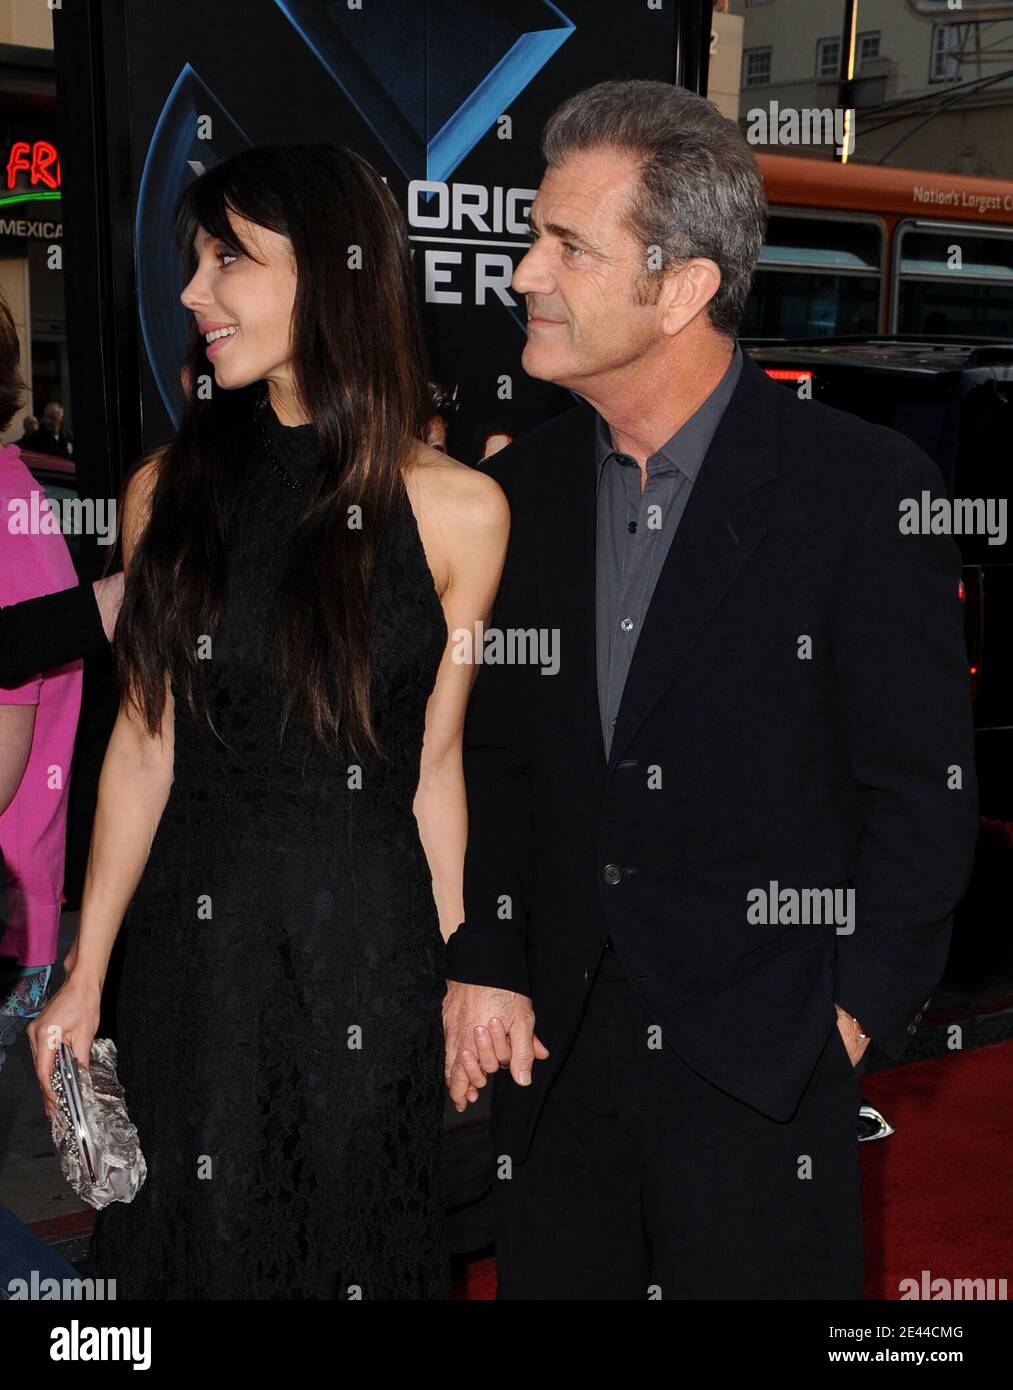 Mel Gibson et sa petite amie Oksana Grigorieva arrivent pour la projection de 'X-Men Origins: Wolverine' au Grauman's Chinese Theatre à Hollywood, Los Angeles, CA, USA le 28 avril 2009. Photo de Lionel Hahn/ABACAPRESS.COM Banque D'Images